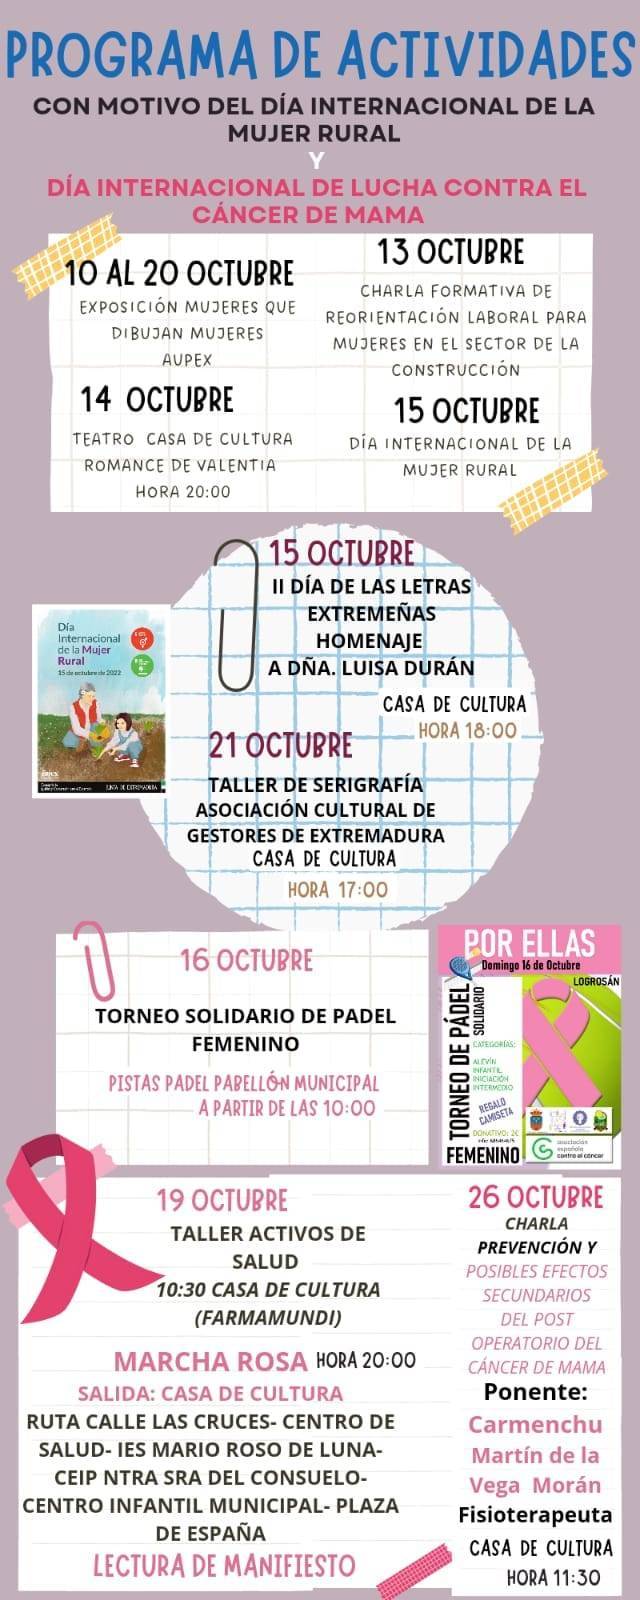 Programa de actividades del Día Internacional de la Mujer Rural y Cáncer de Mama (2022) - Logrosán (Cáceres)